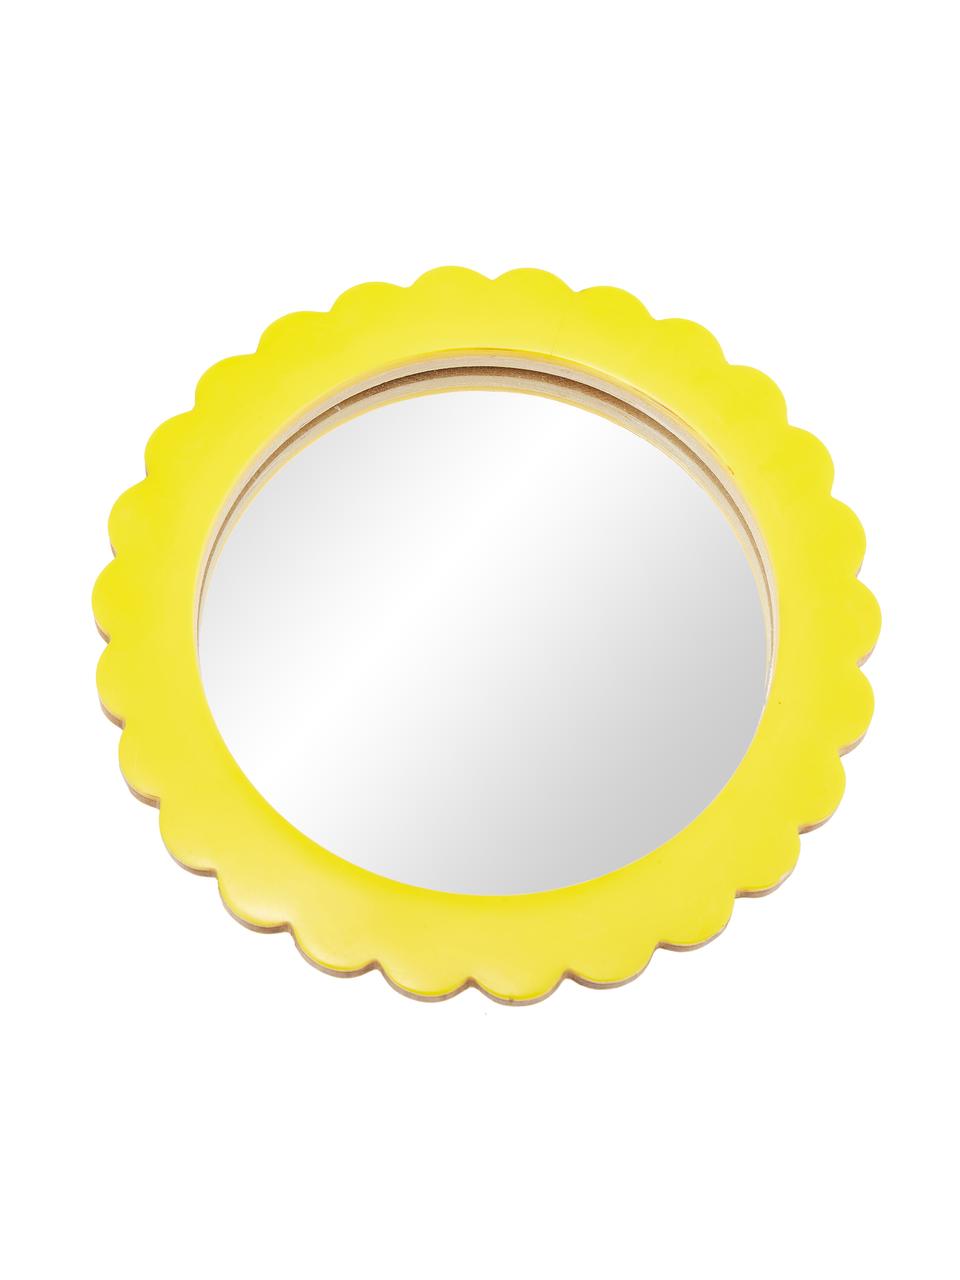 Kosmetikspiegel Bloom mit gelbem Kuststoffrahmen, Rahmen: Polyresin, Mitteldichte H, Spiegelfläche: Spiegelglas, Gelb, Ø 17 cm x T 2 cm